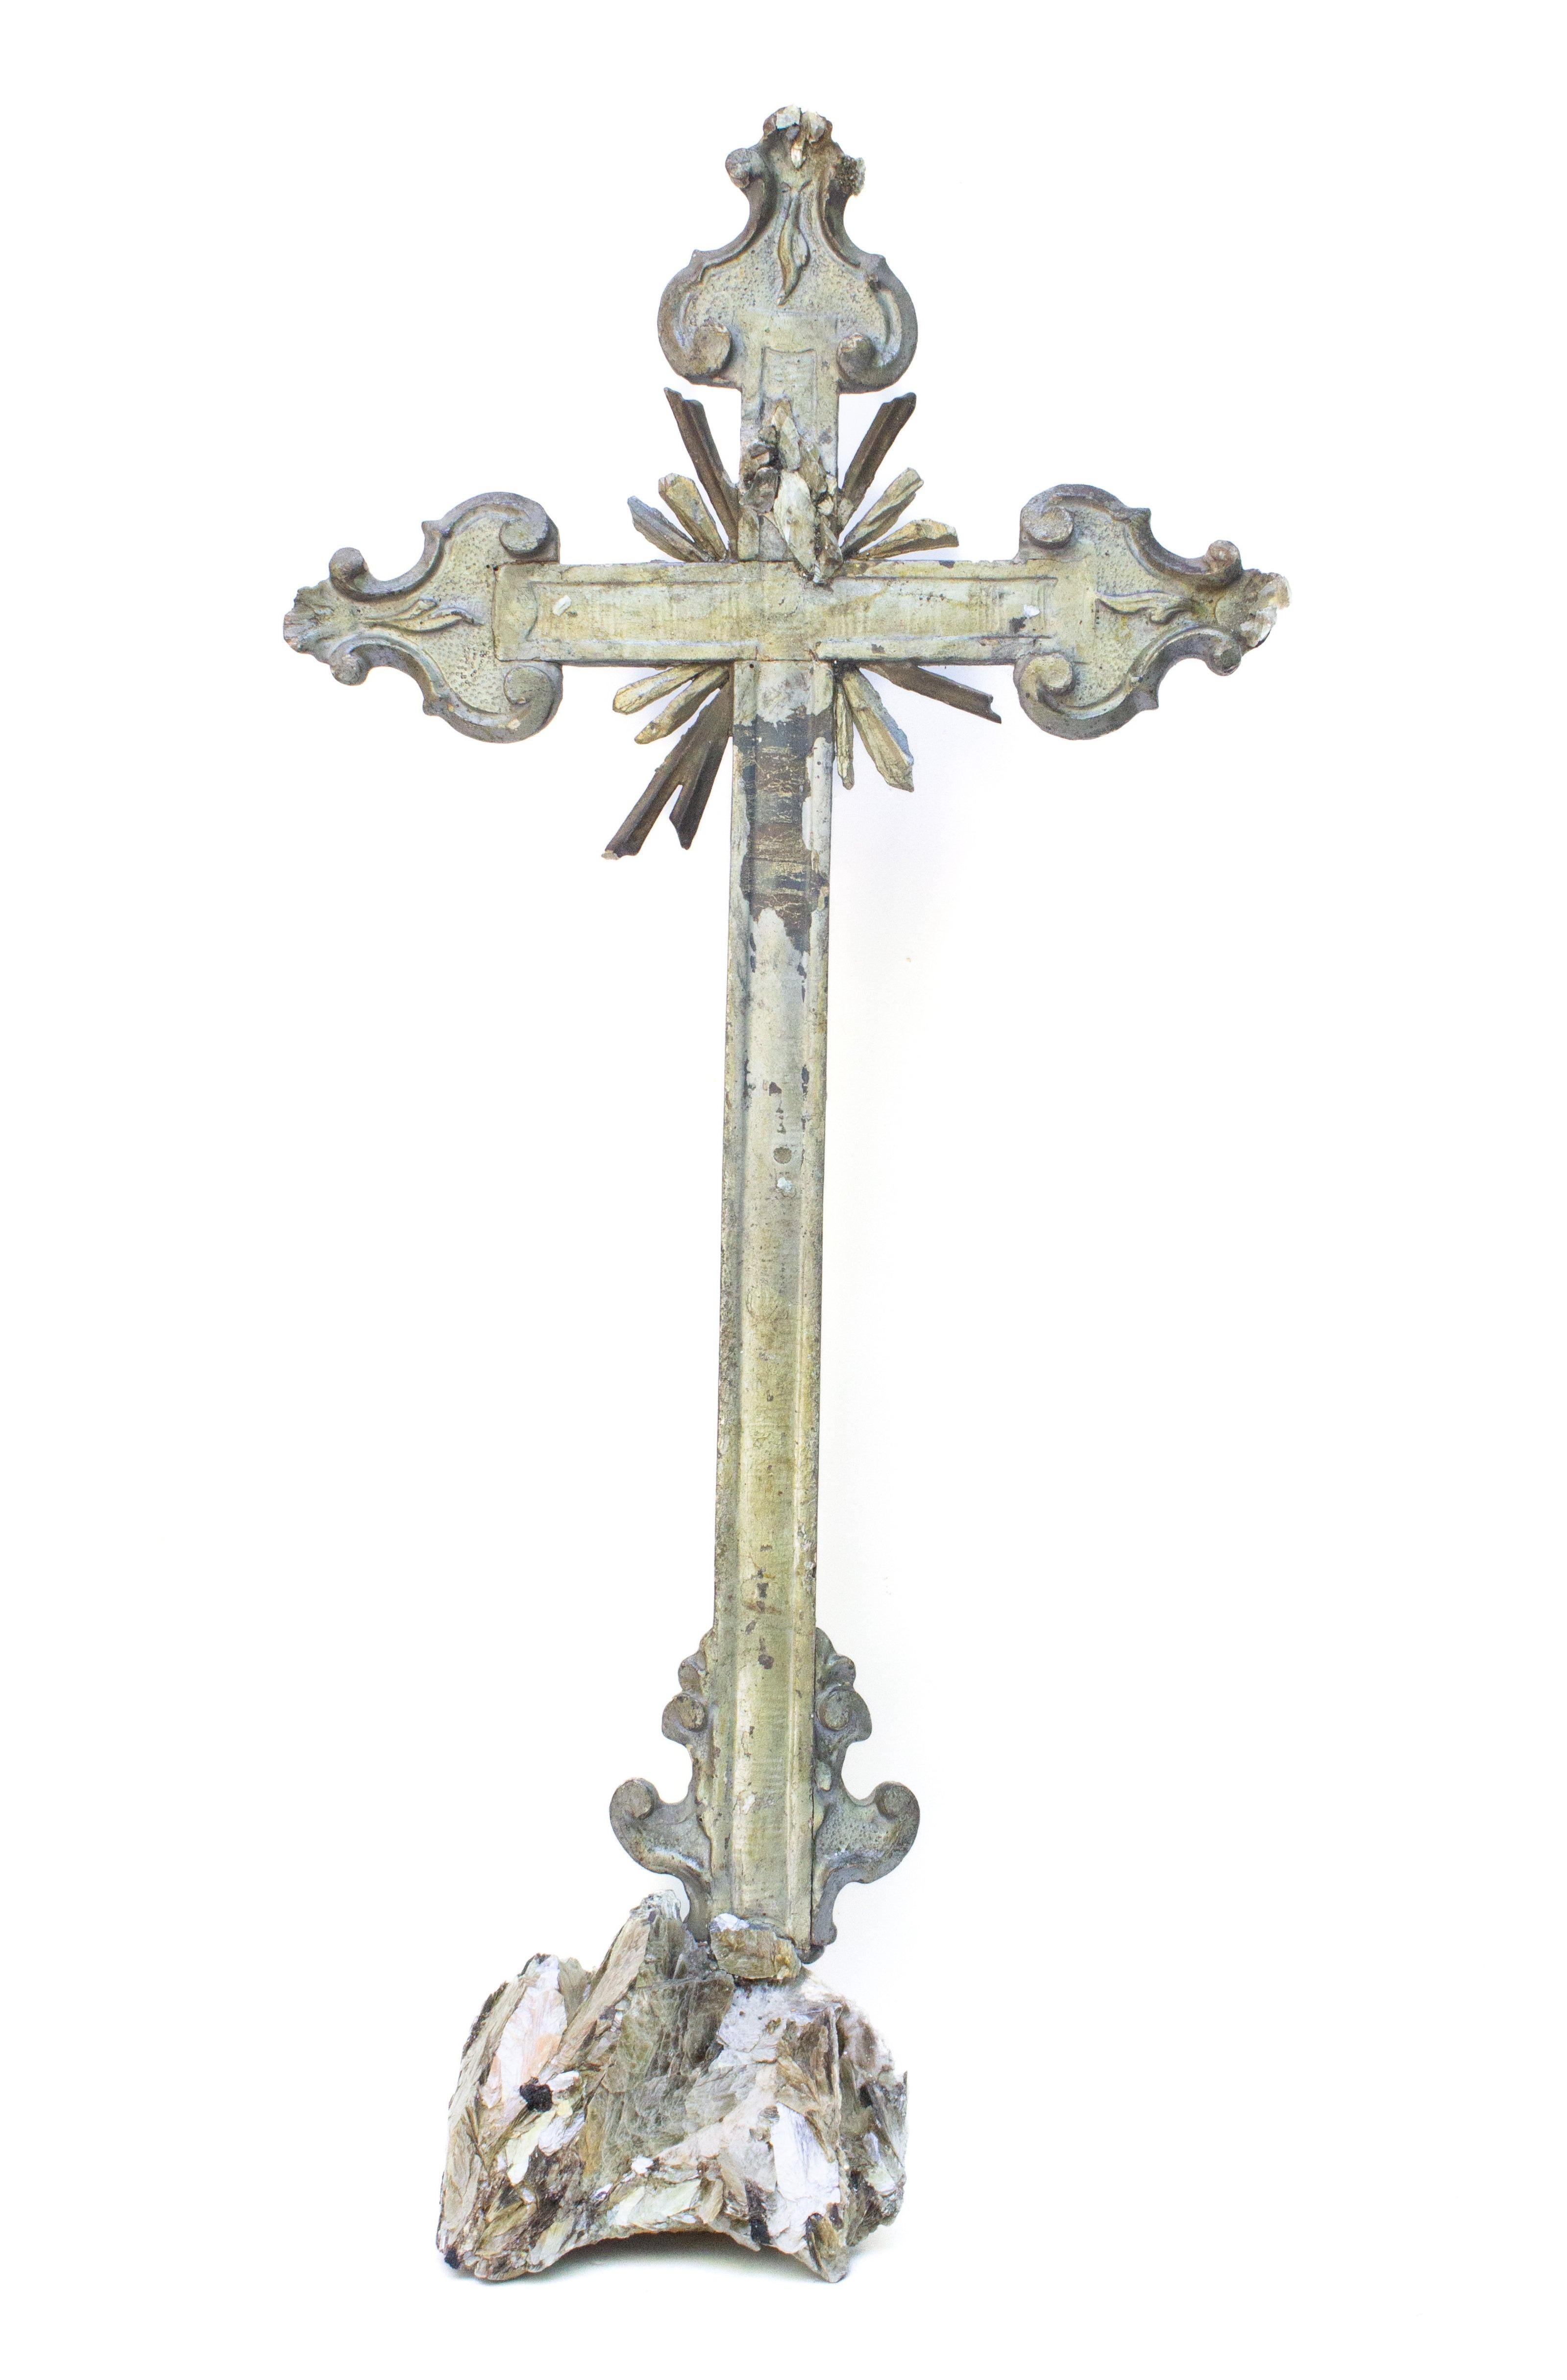 Italienisches Blatt- und Mekka-Kreuz aus dem 18. Jahrhundert, verziert mit vergoldeten und versilberten Kristallspitzen und Glimmer, montiert auf einem Sockel aus Glimmer und Turmalin in Calcitmatrix. Das Kruzifix stammt ursprünglich aus einer